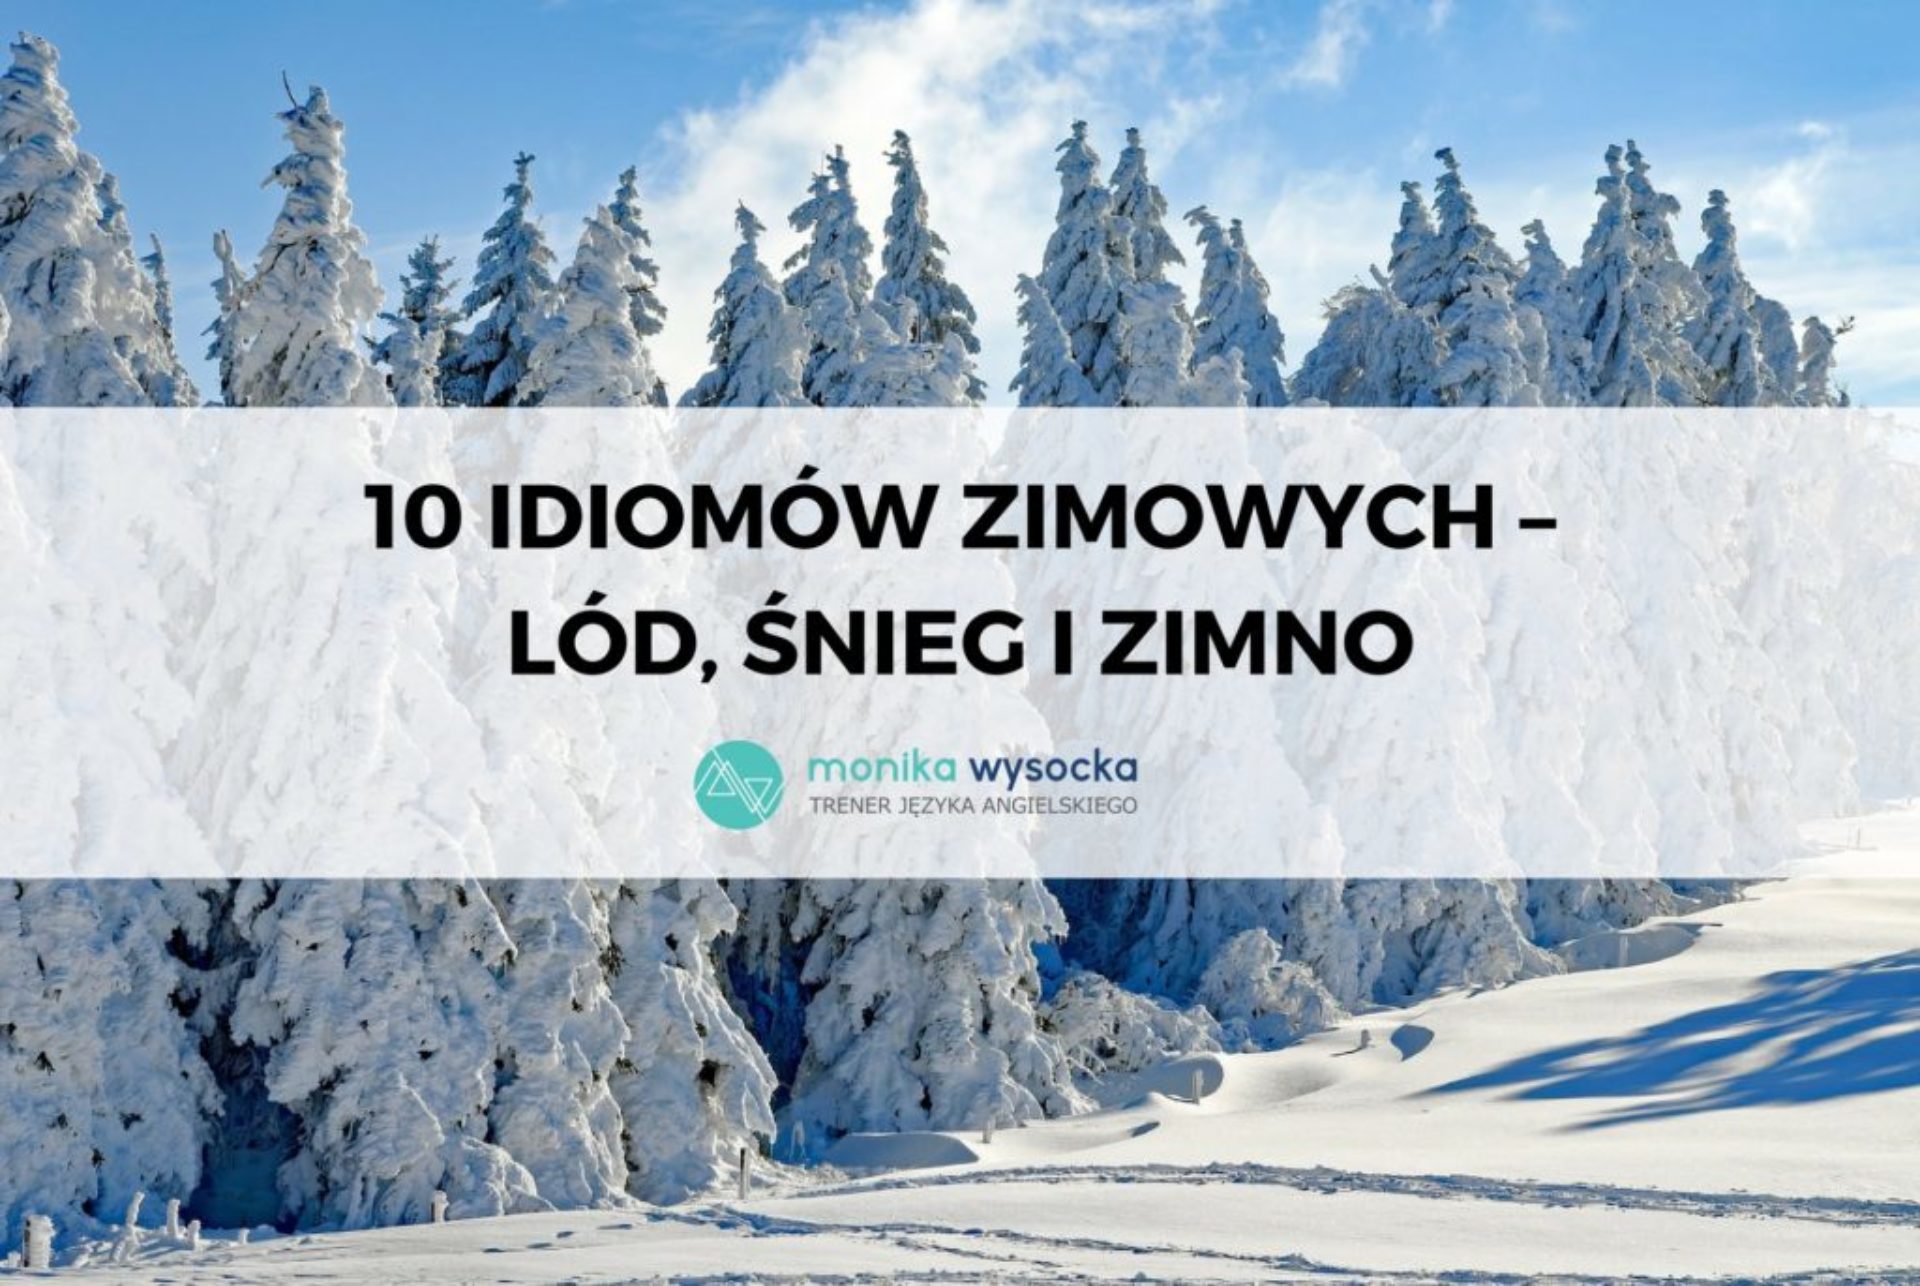 10 idiomów zizmowych - lód, śnieg i zimno.